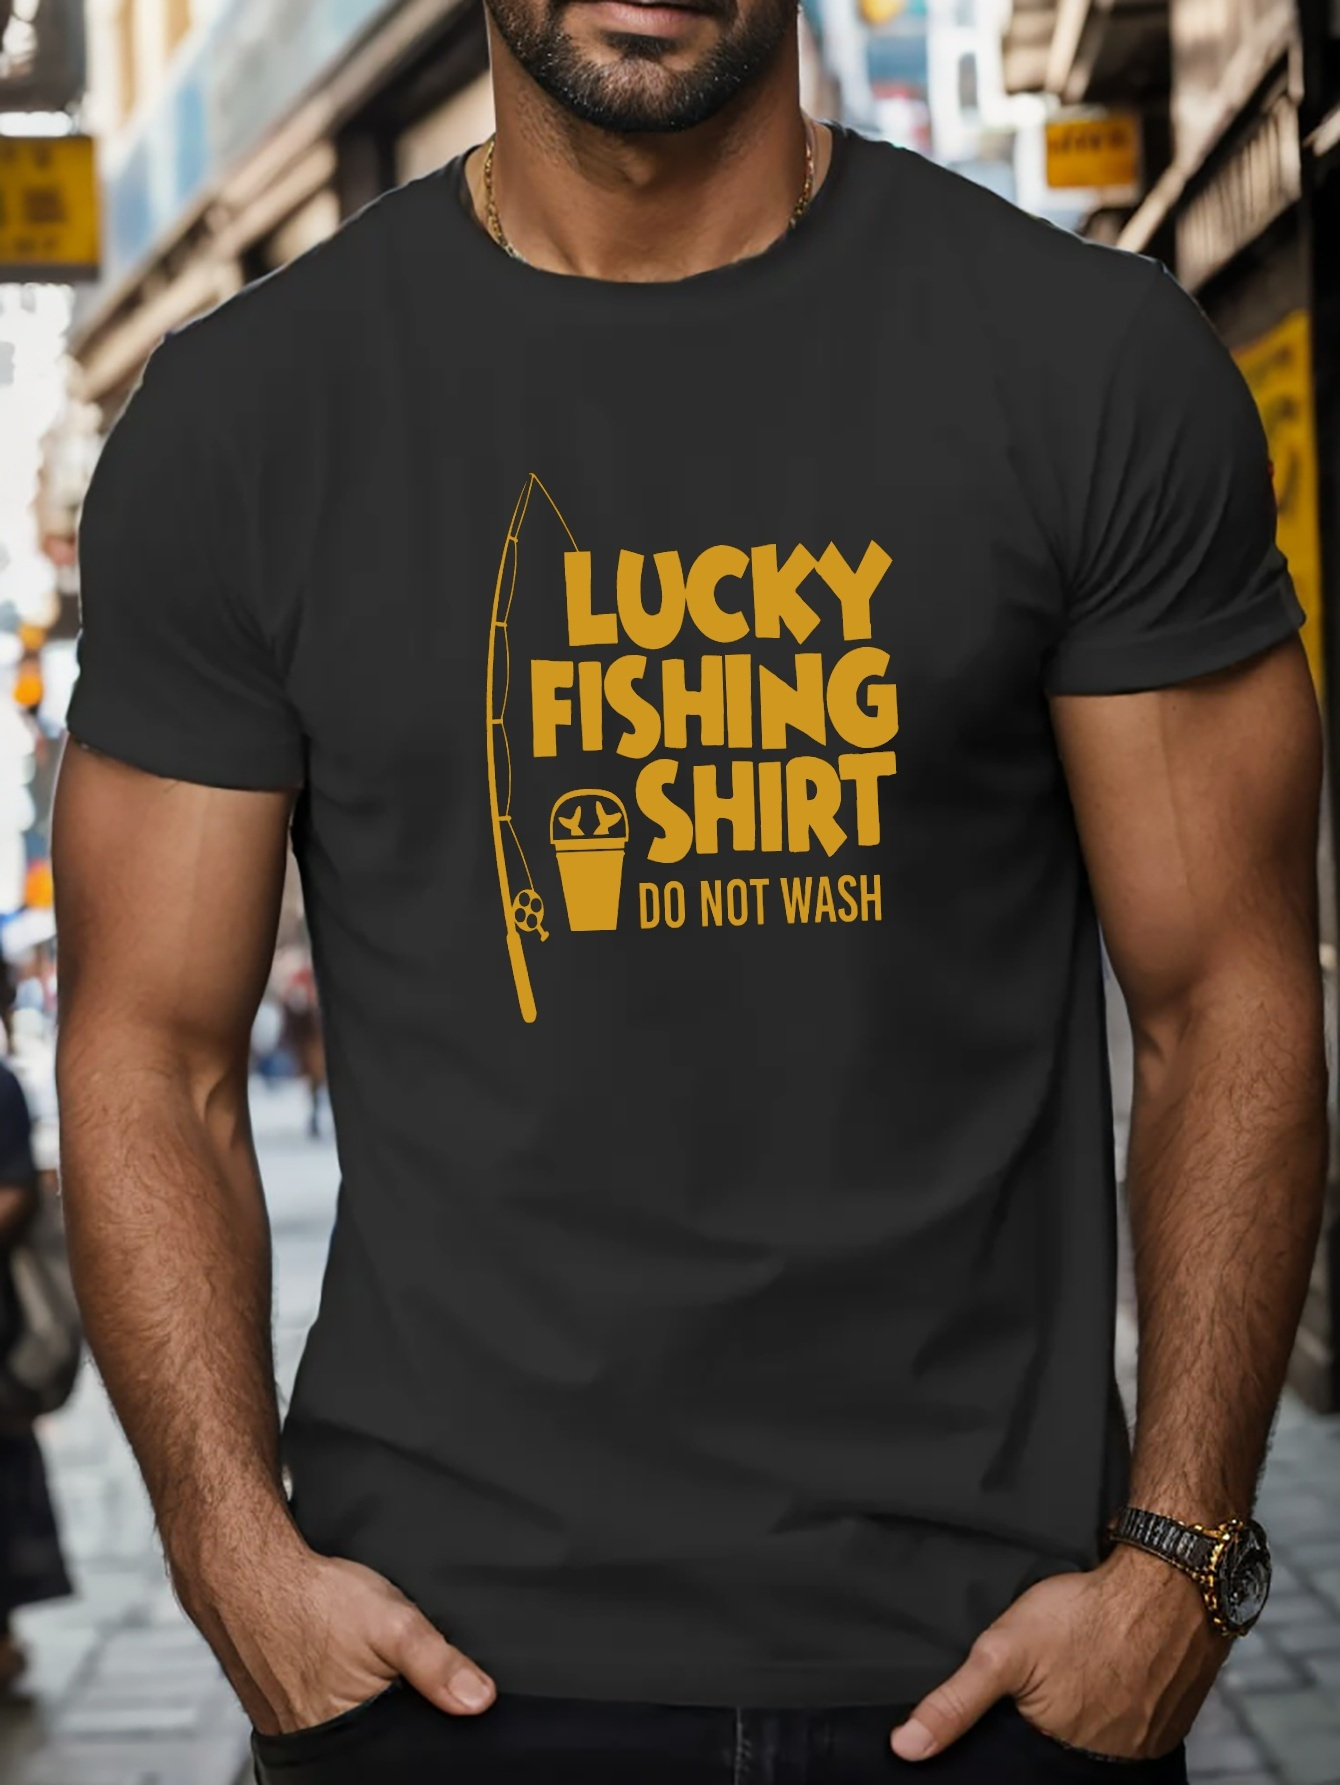 Men's Fishing Shirt - My Lucky Fishing Shirt Do Not Wash - Get On It Apparel